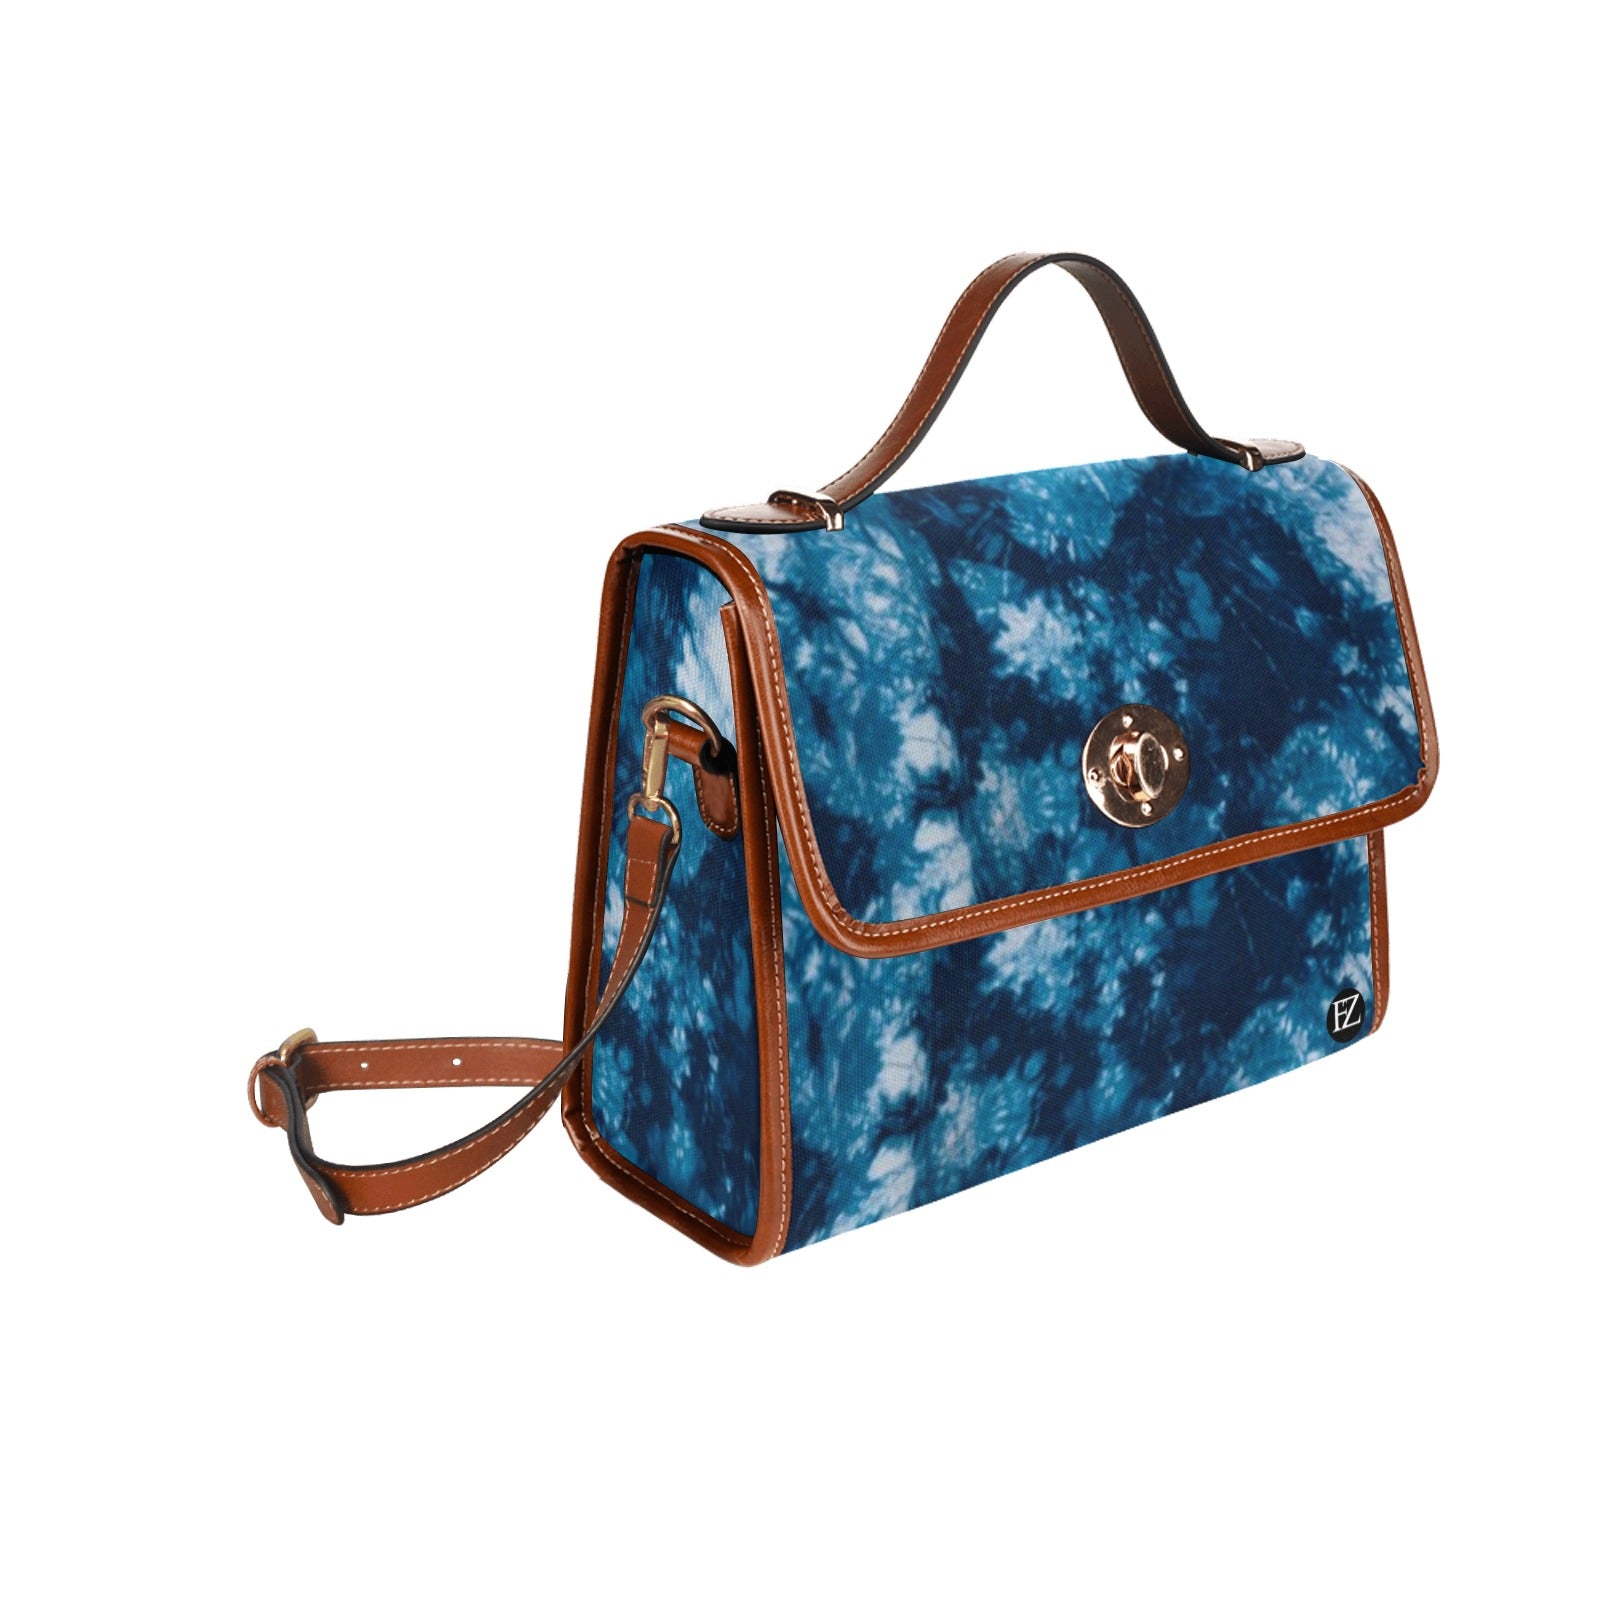 fz tye handbag 2.0 all over print canvas bag(model1641)(brown)